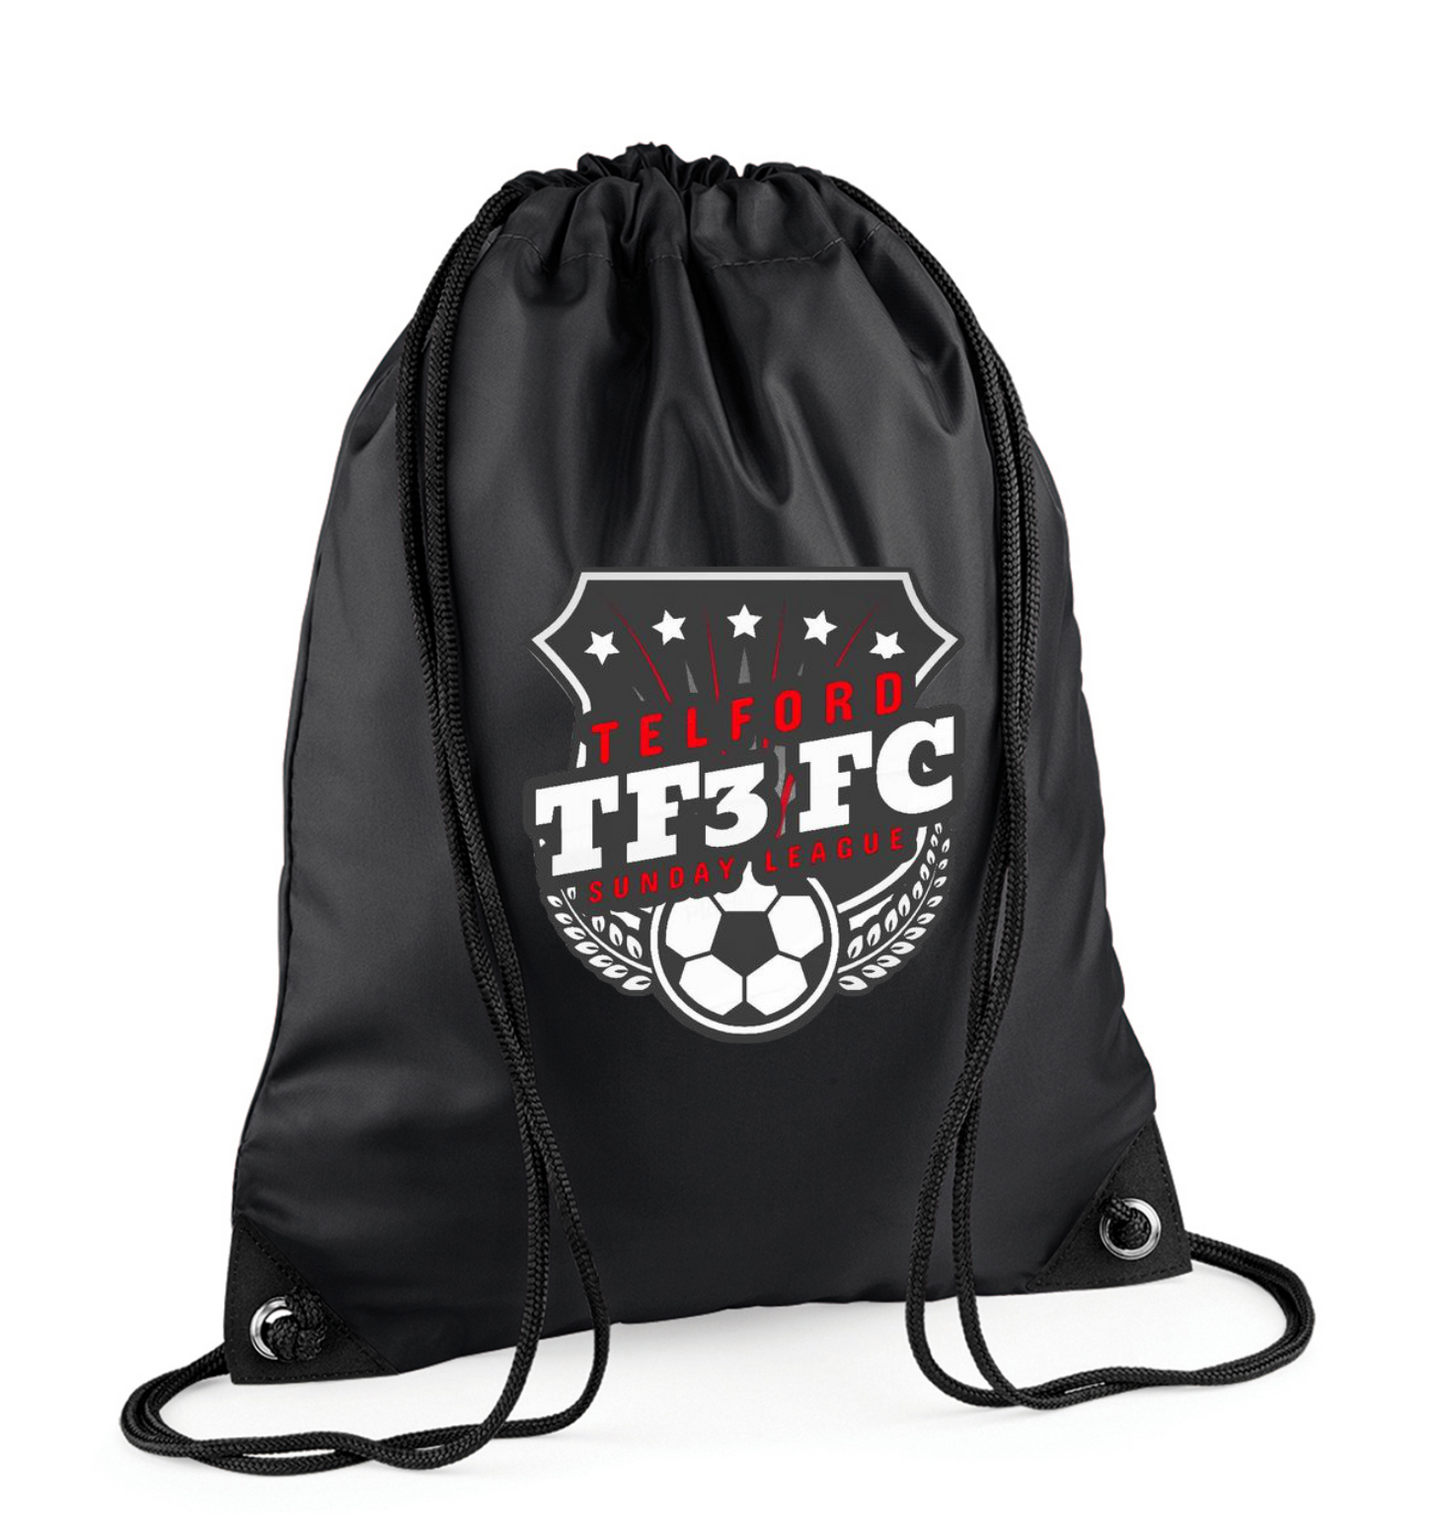 TF3FC Kit bag